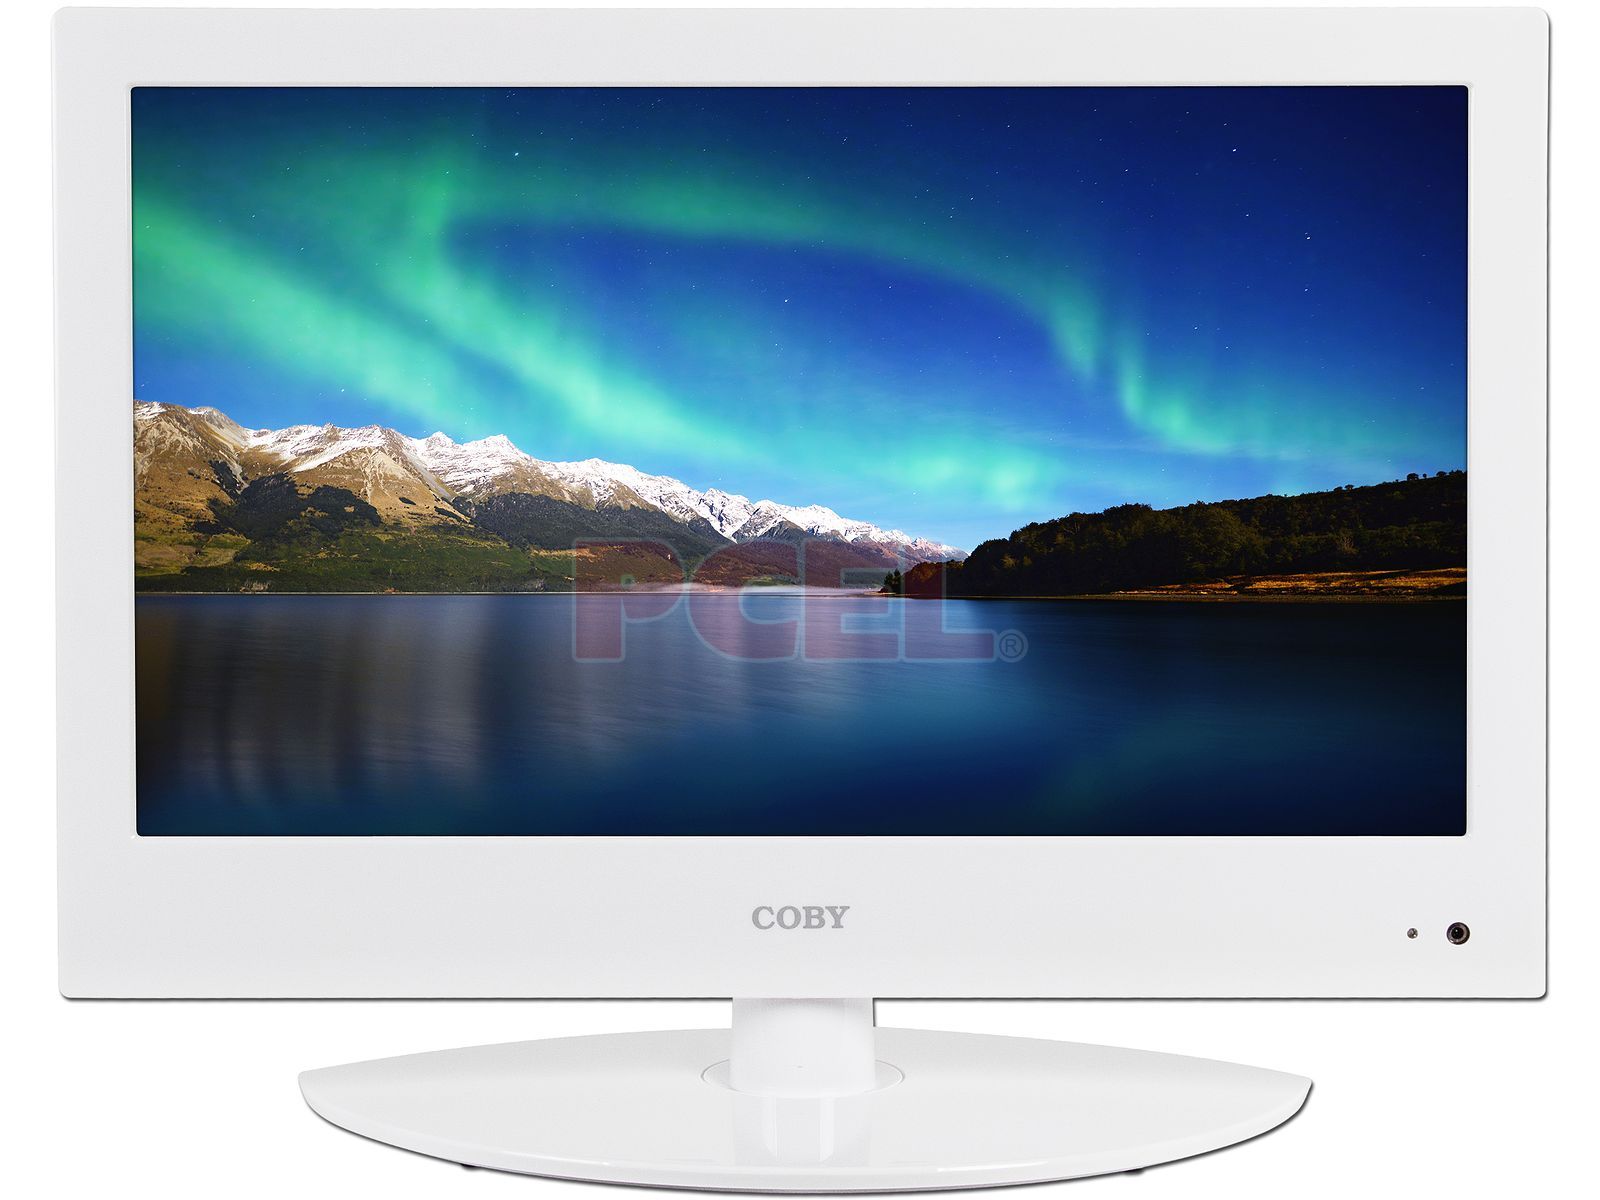 Televisión LED Coby de 18.5 HDTV, 720P.